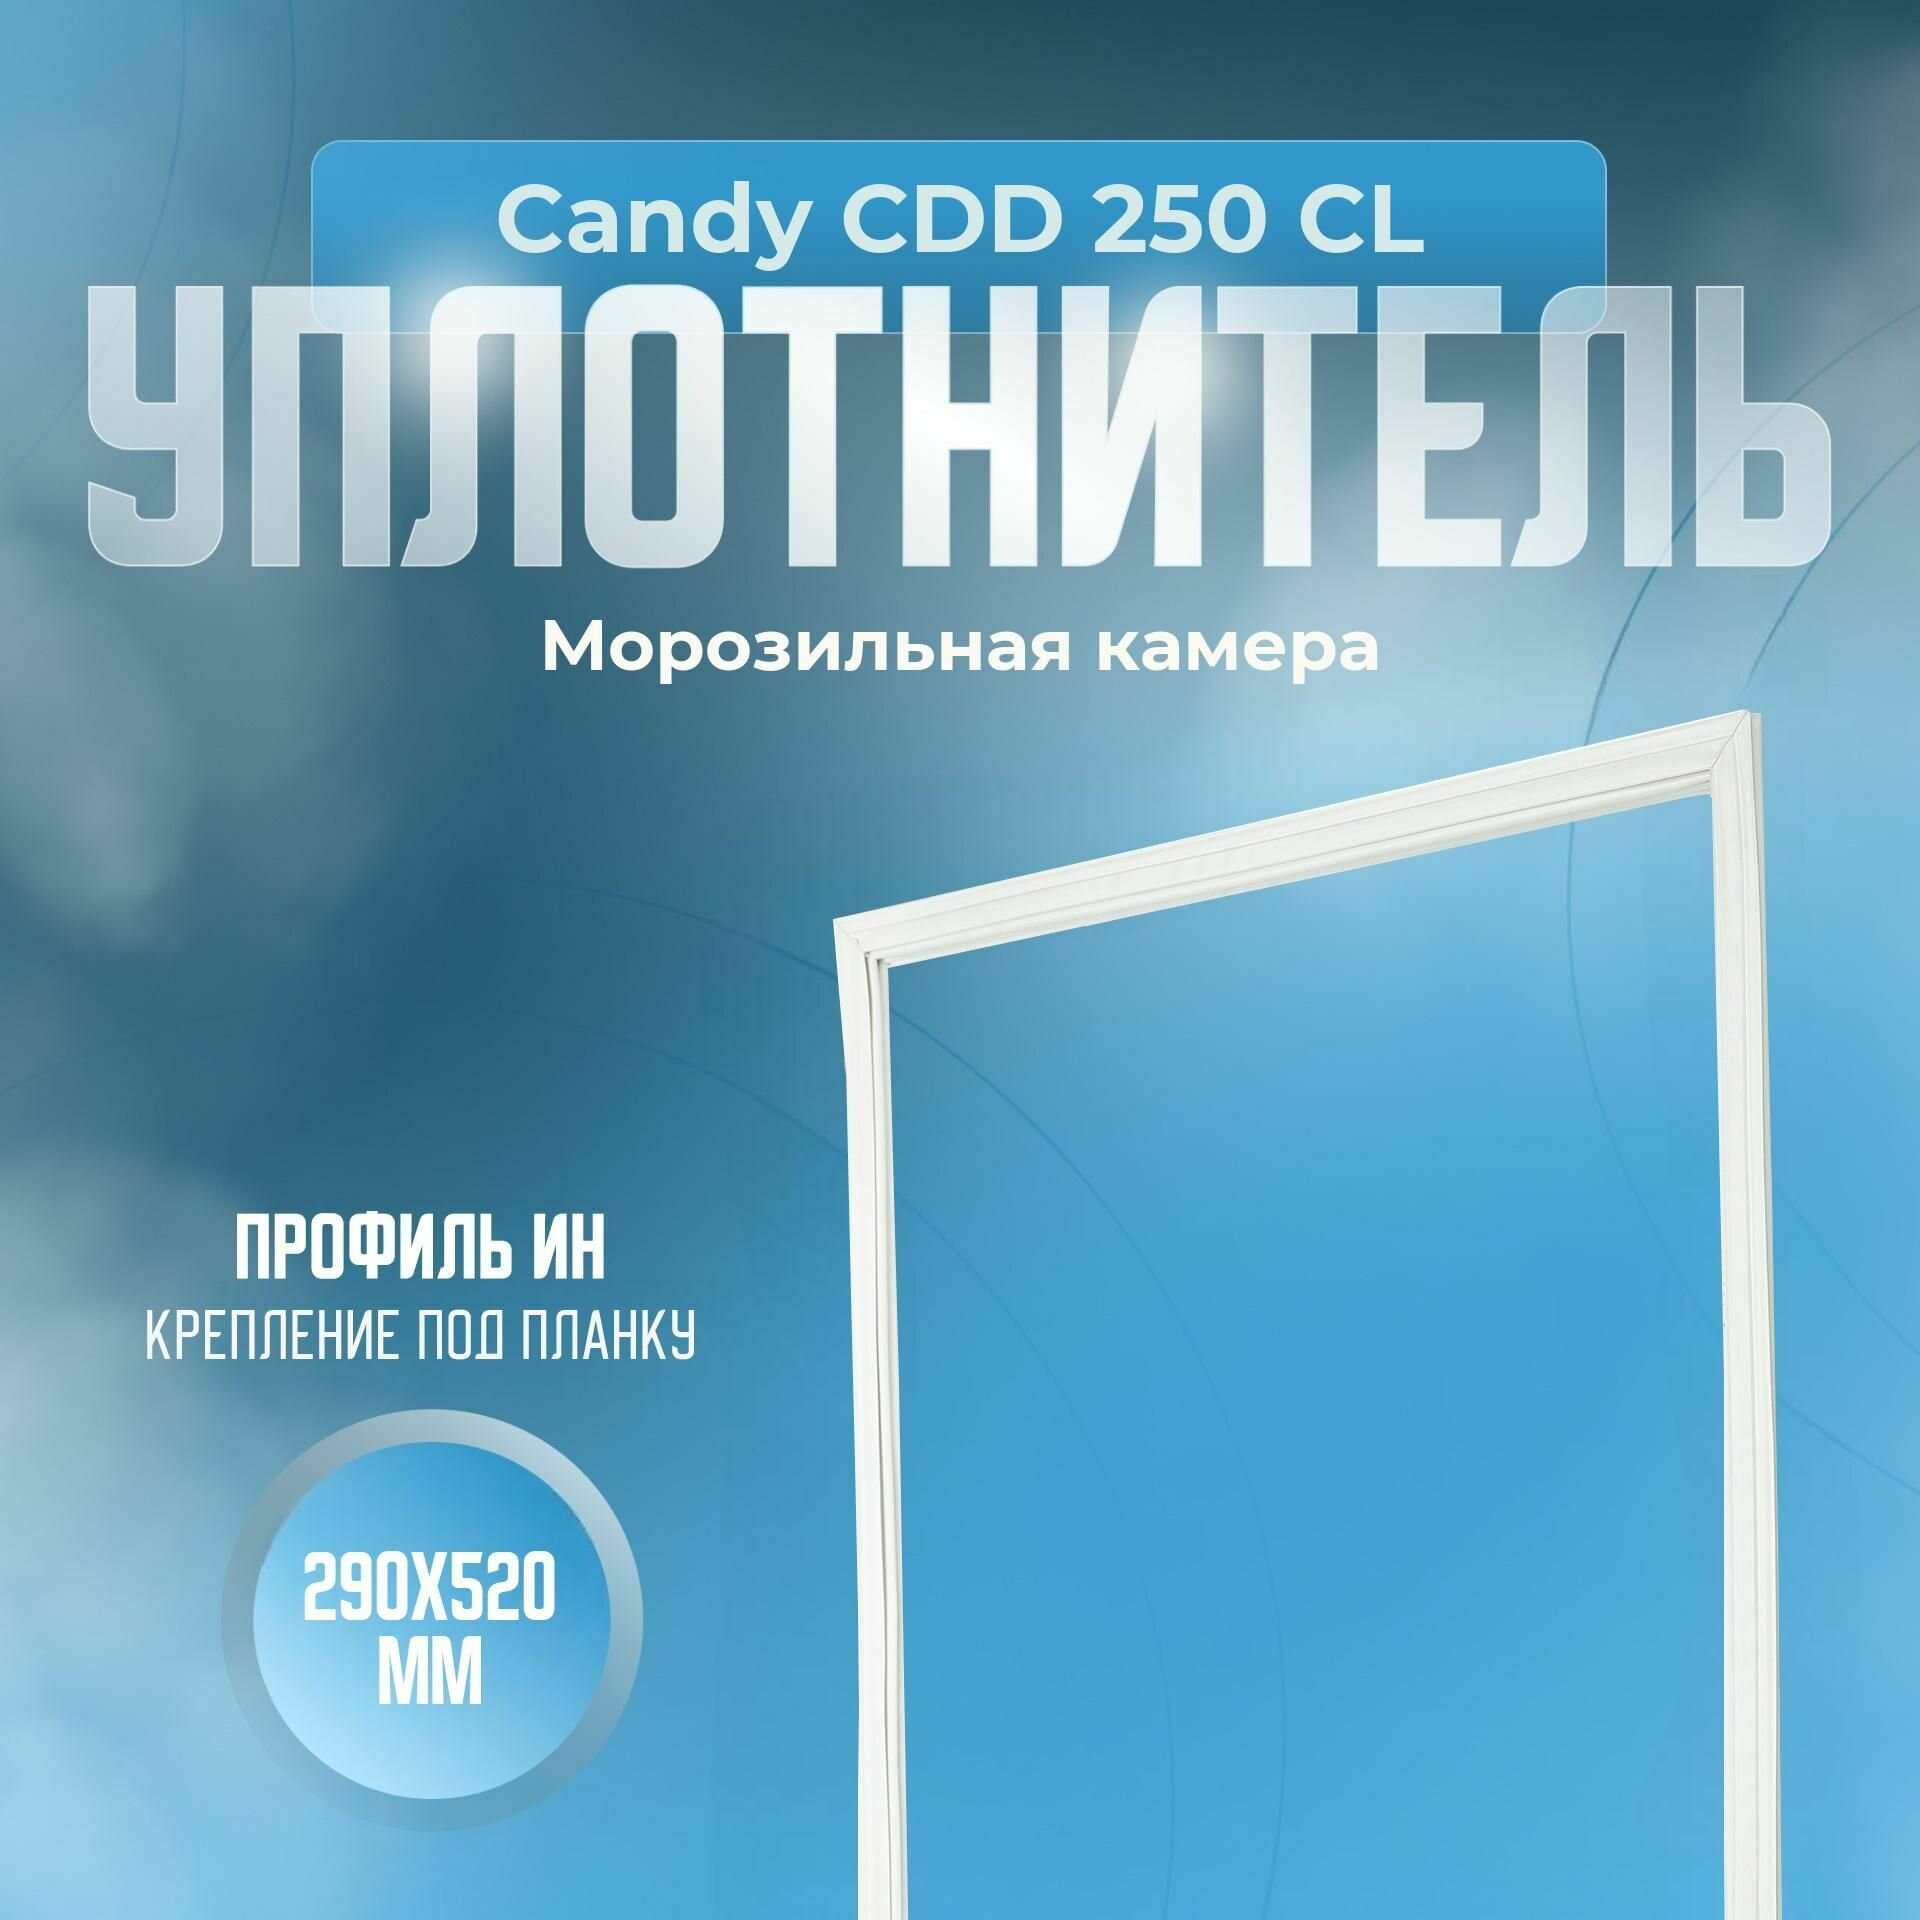 Уплотнитель Candy СDD 250 CL. м. к, Размер - 290х520 мм. ИН